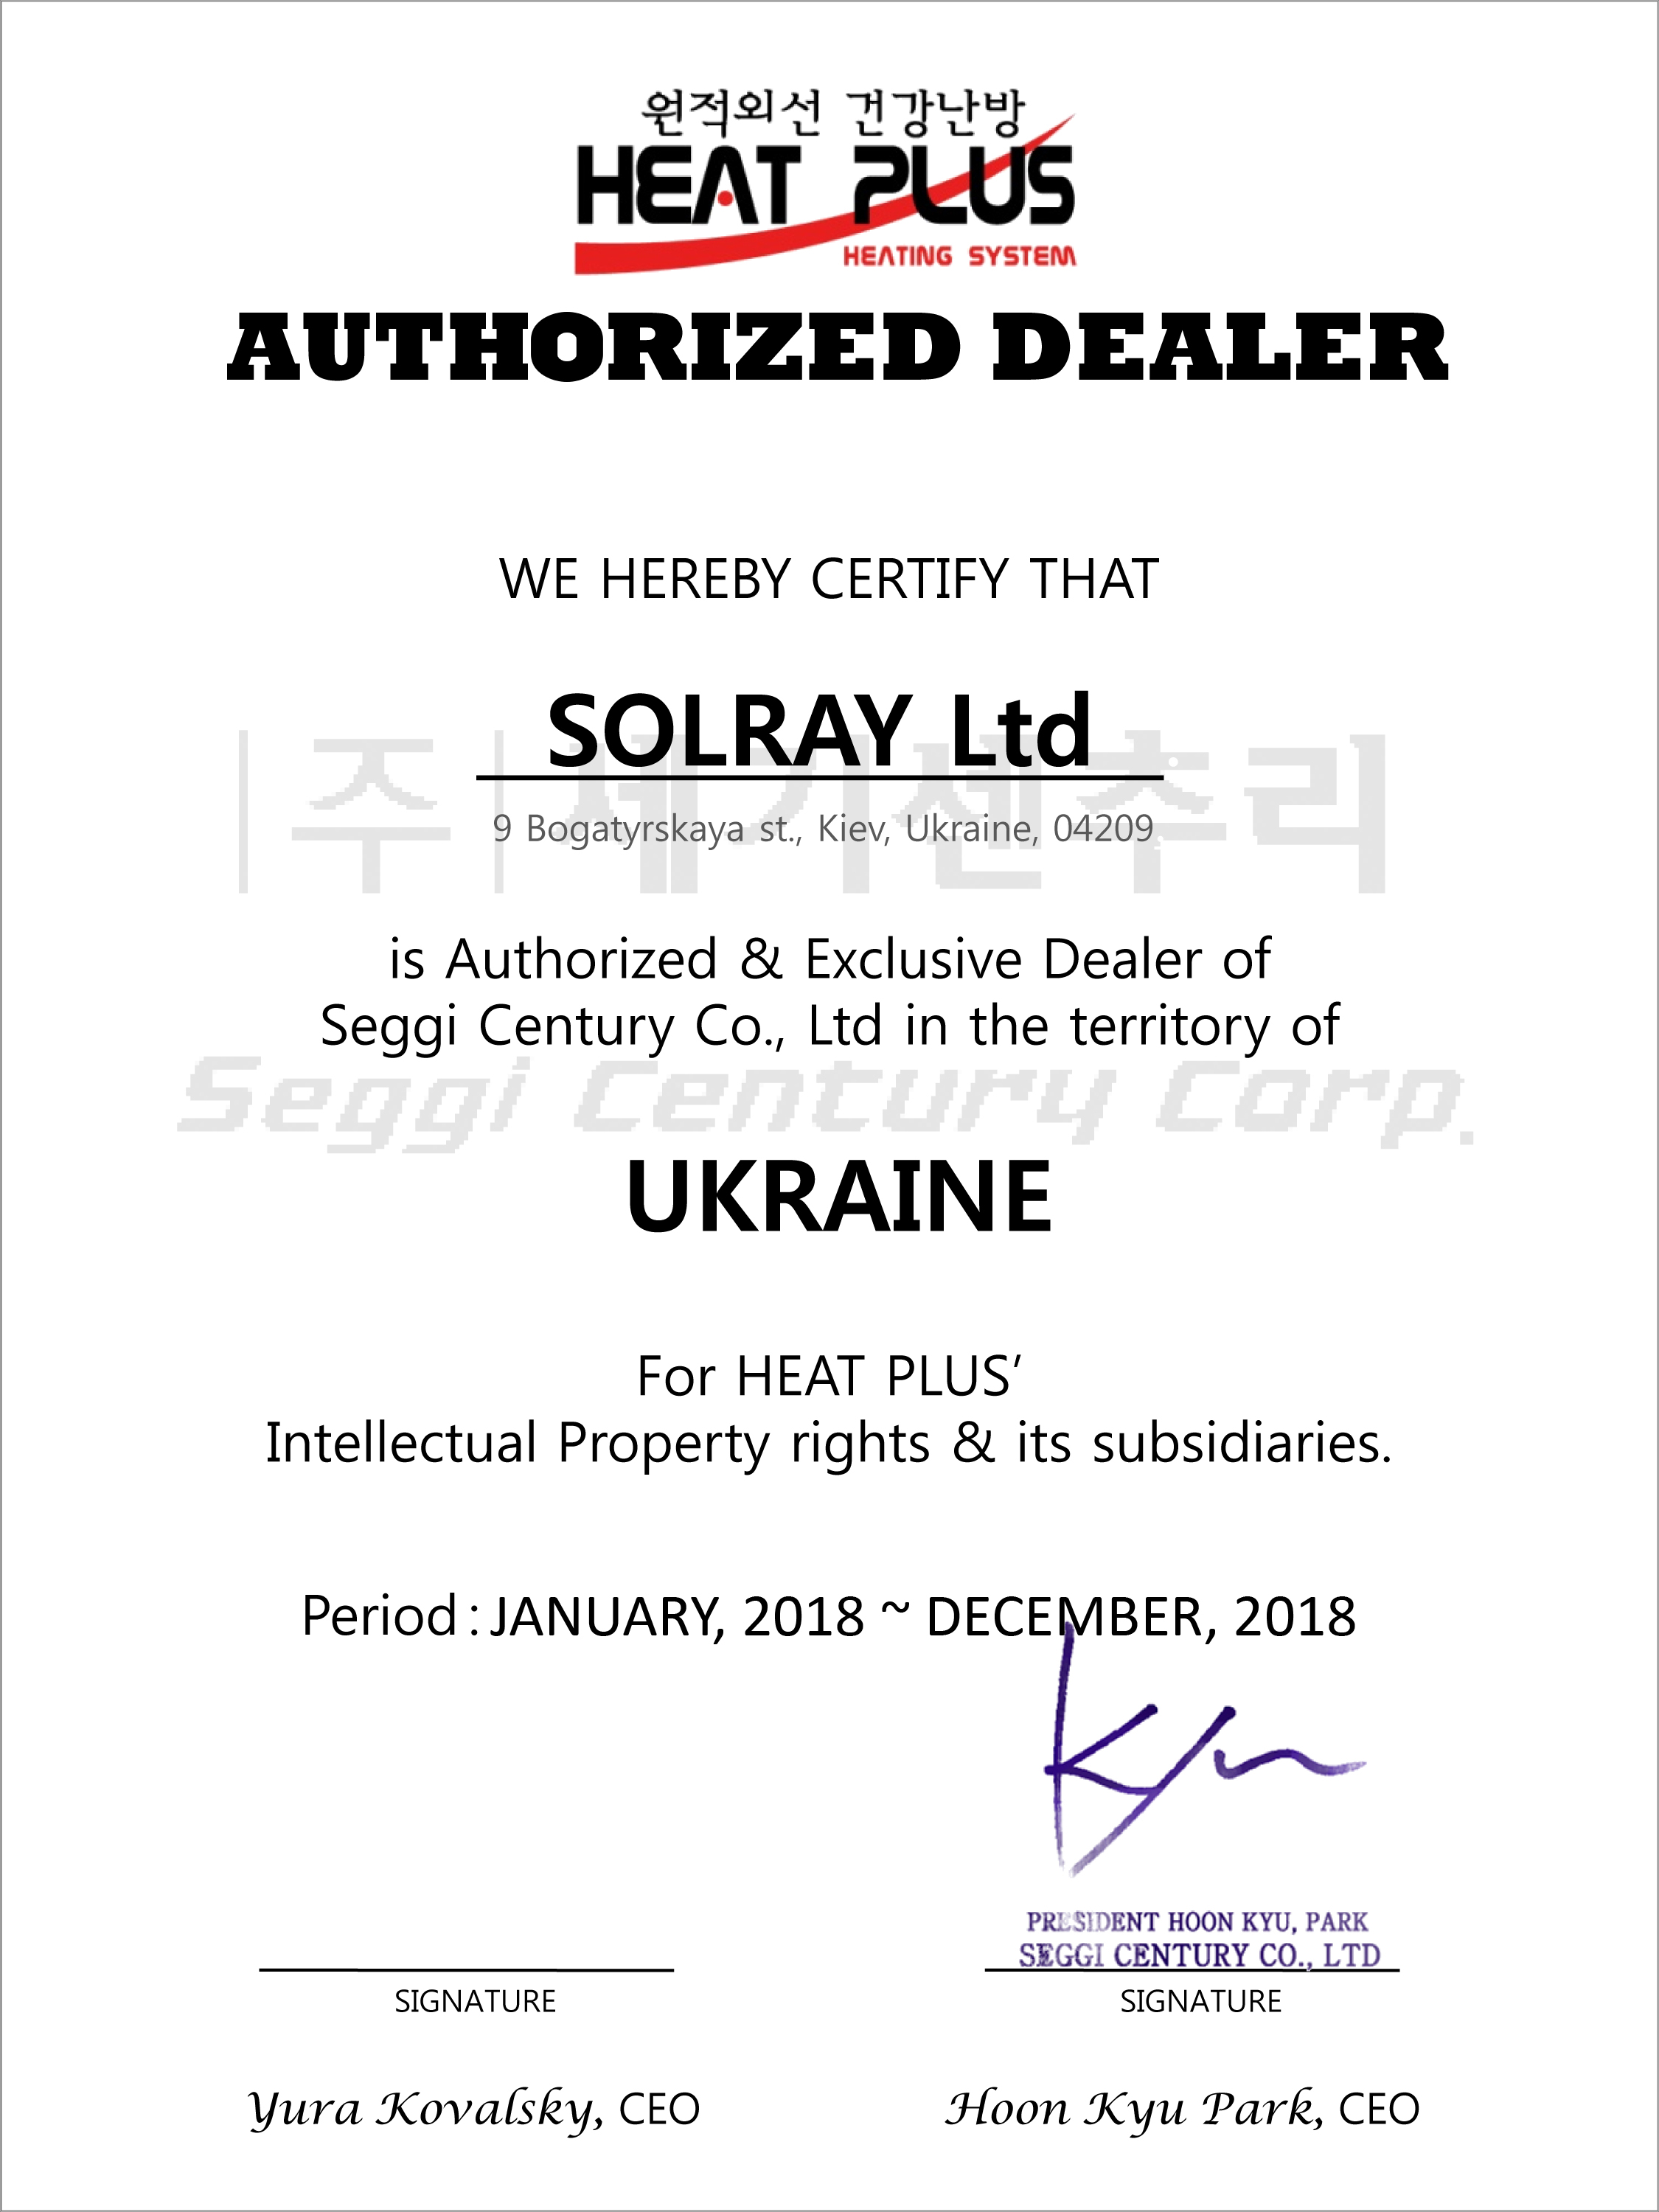 Диплом официального представителя Heat Plus в Украине фото